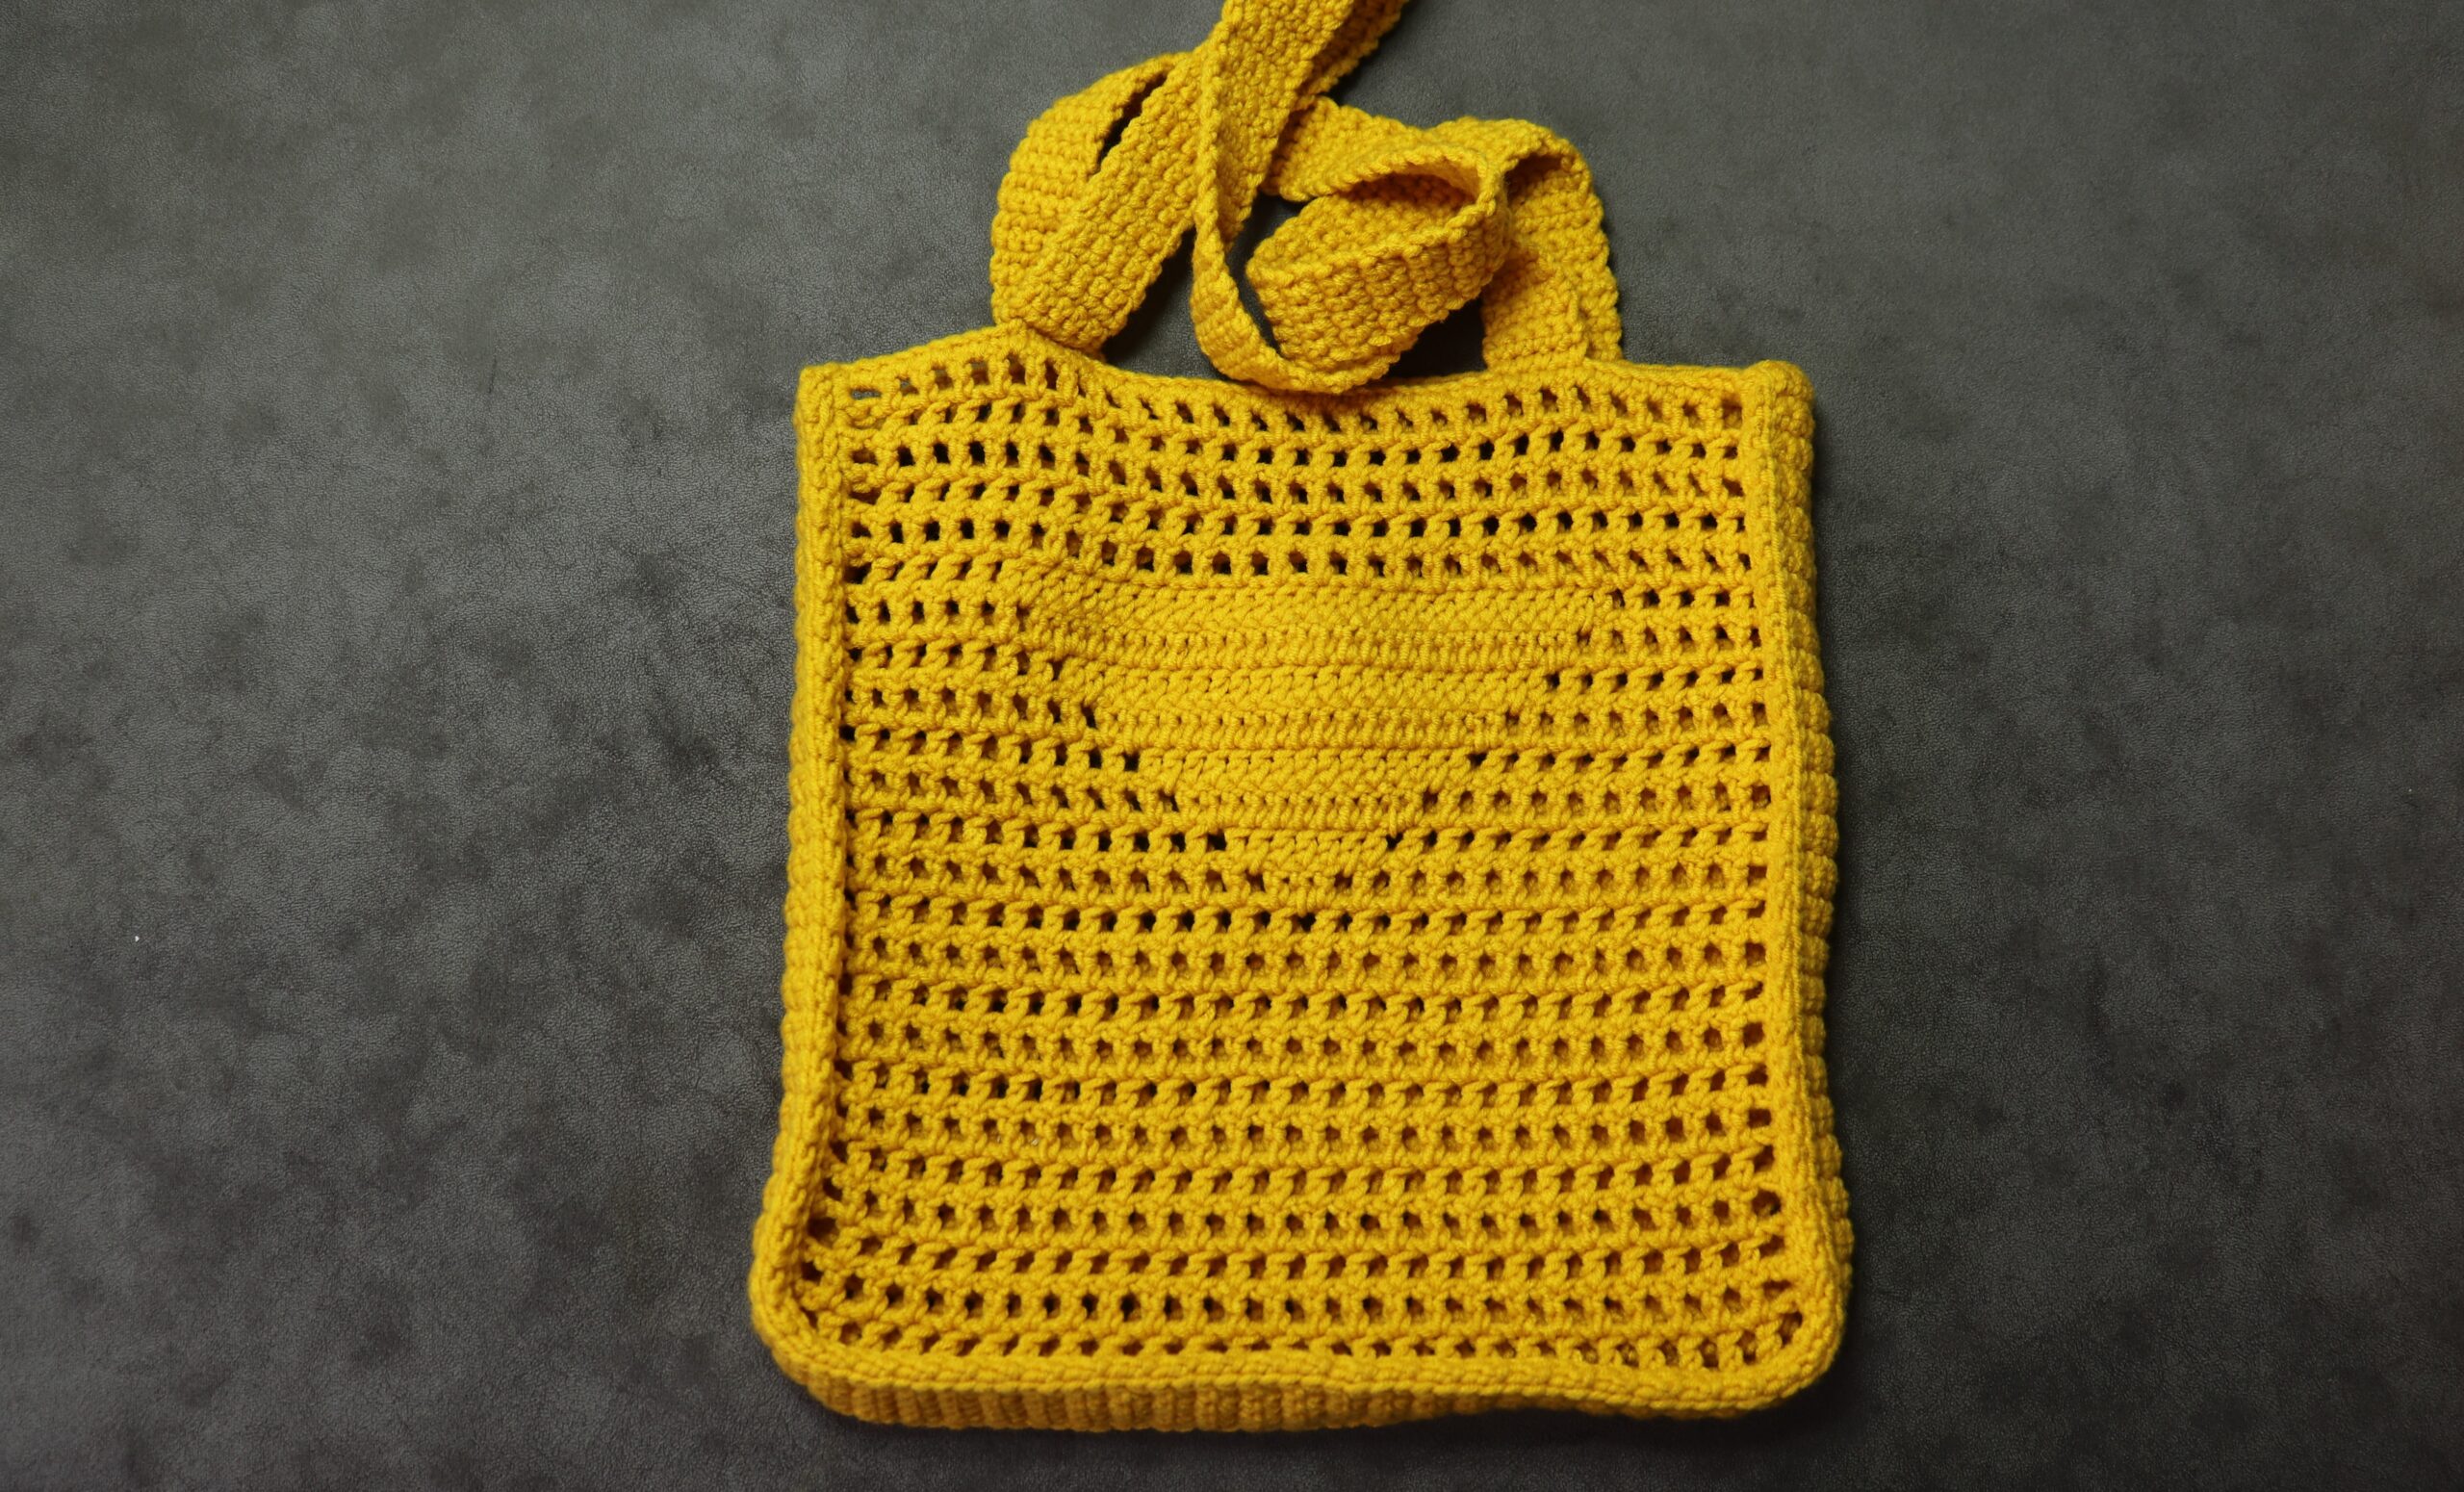 Prada prada crochet tote bag in natural-Via Manzoni